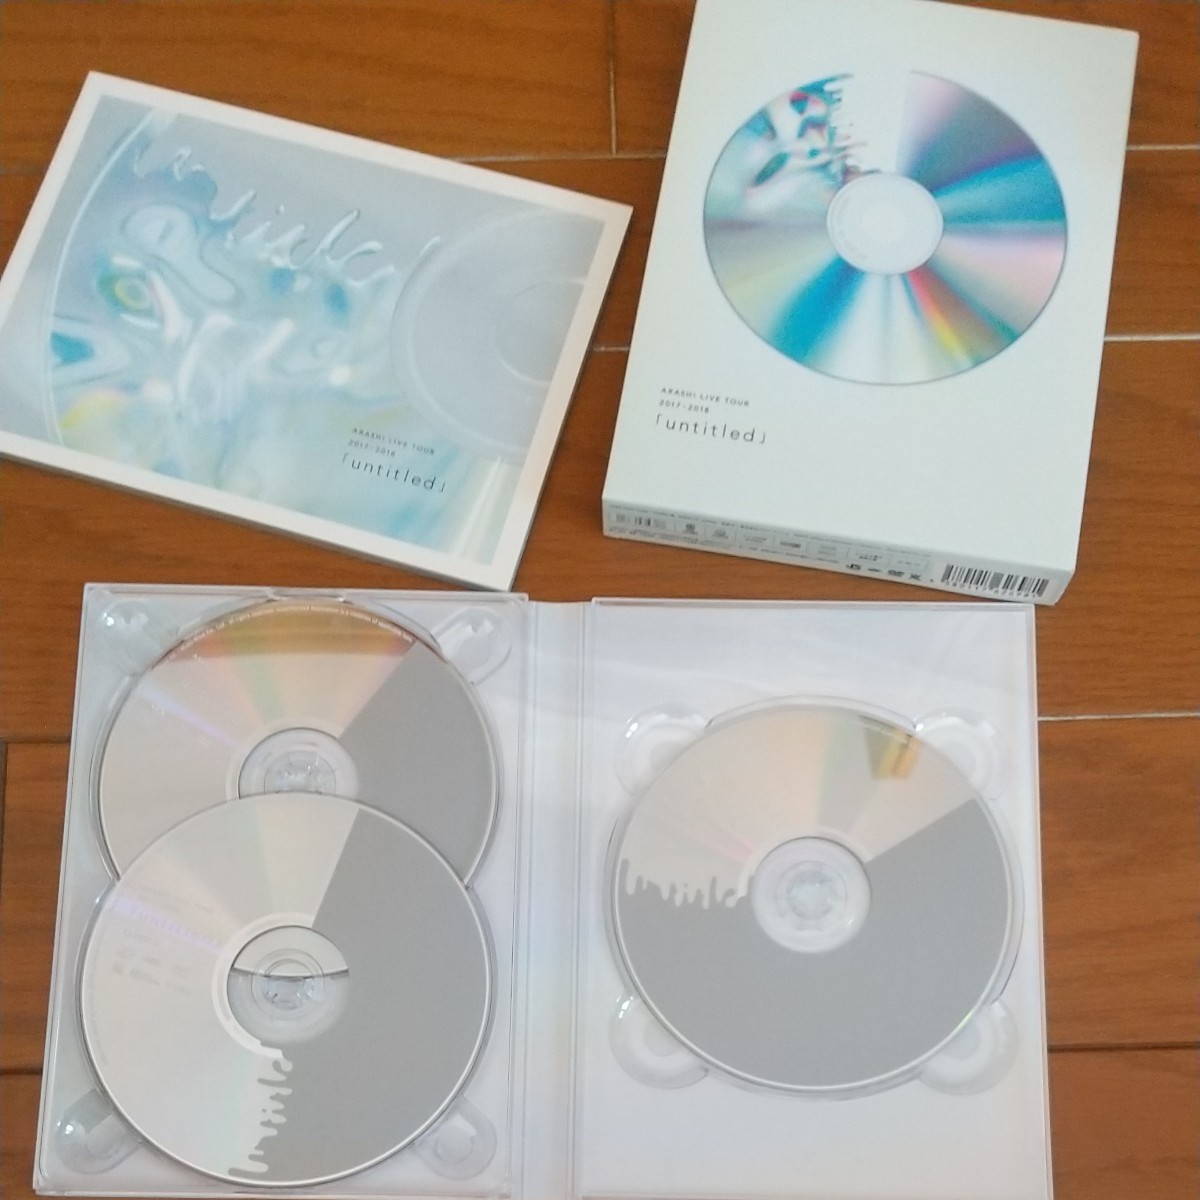 【美品】嵐 untitled 初回限定盤 通常盤 DVD&アルバムセット